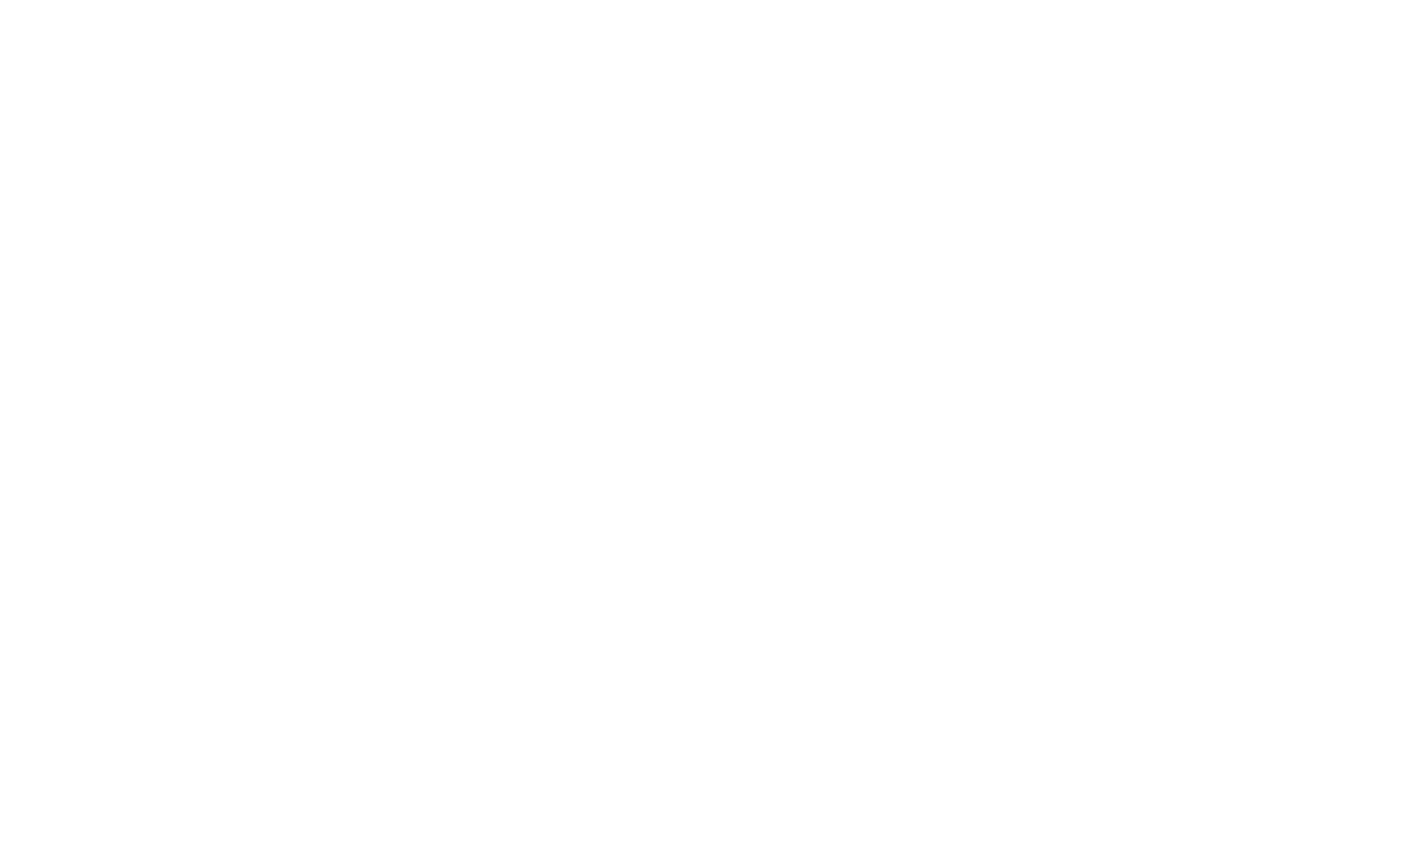 Shareholders' Club – LVMH